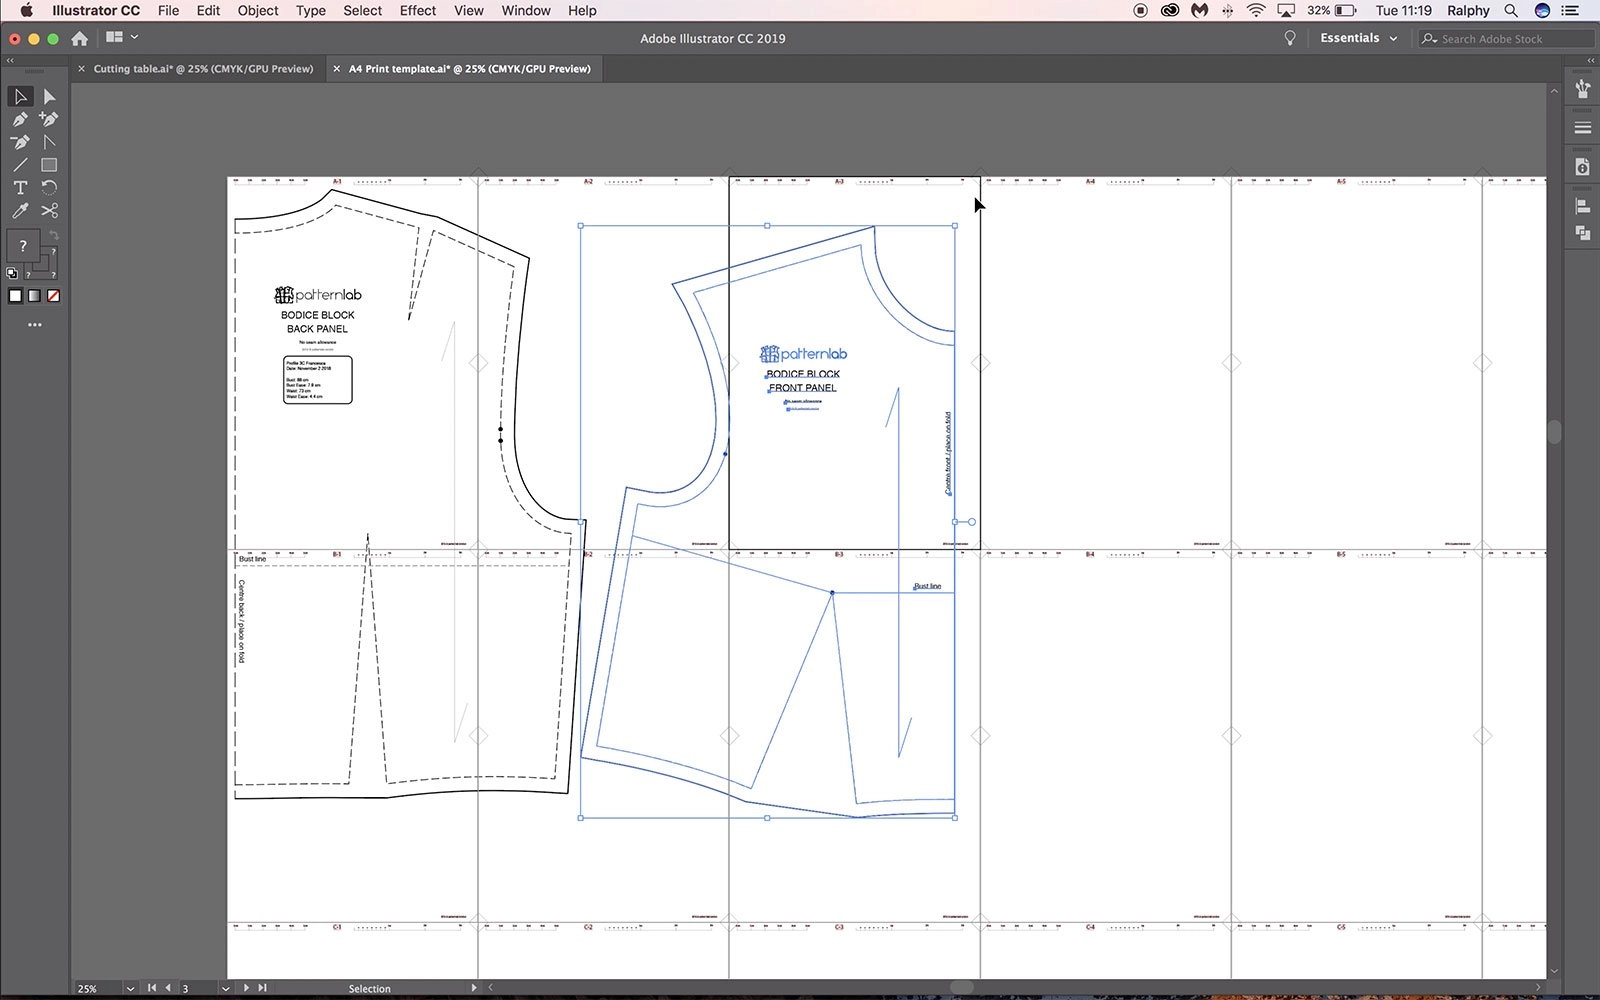 Creating-PDF-sewing-patterns-FREE-Digital-Pattern-Making-Tutorials